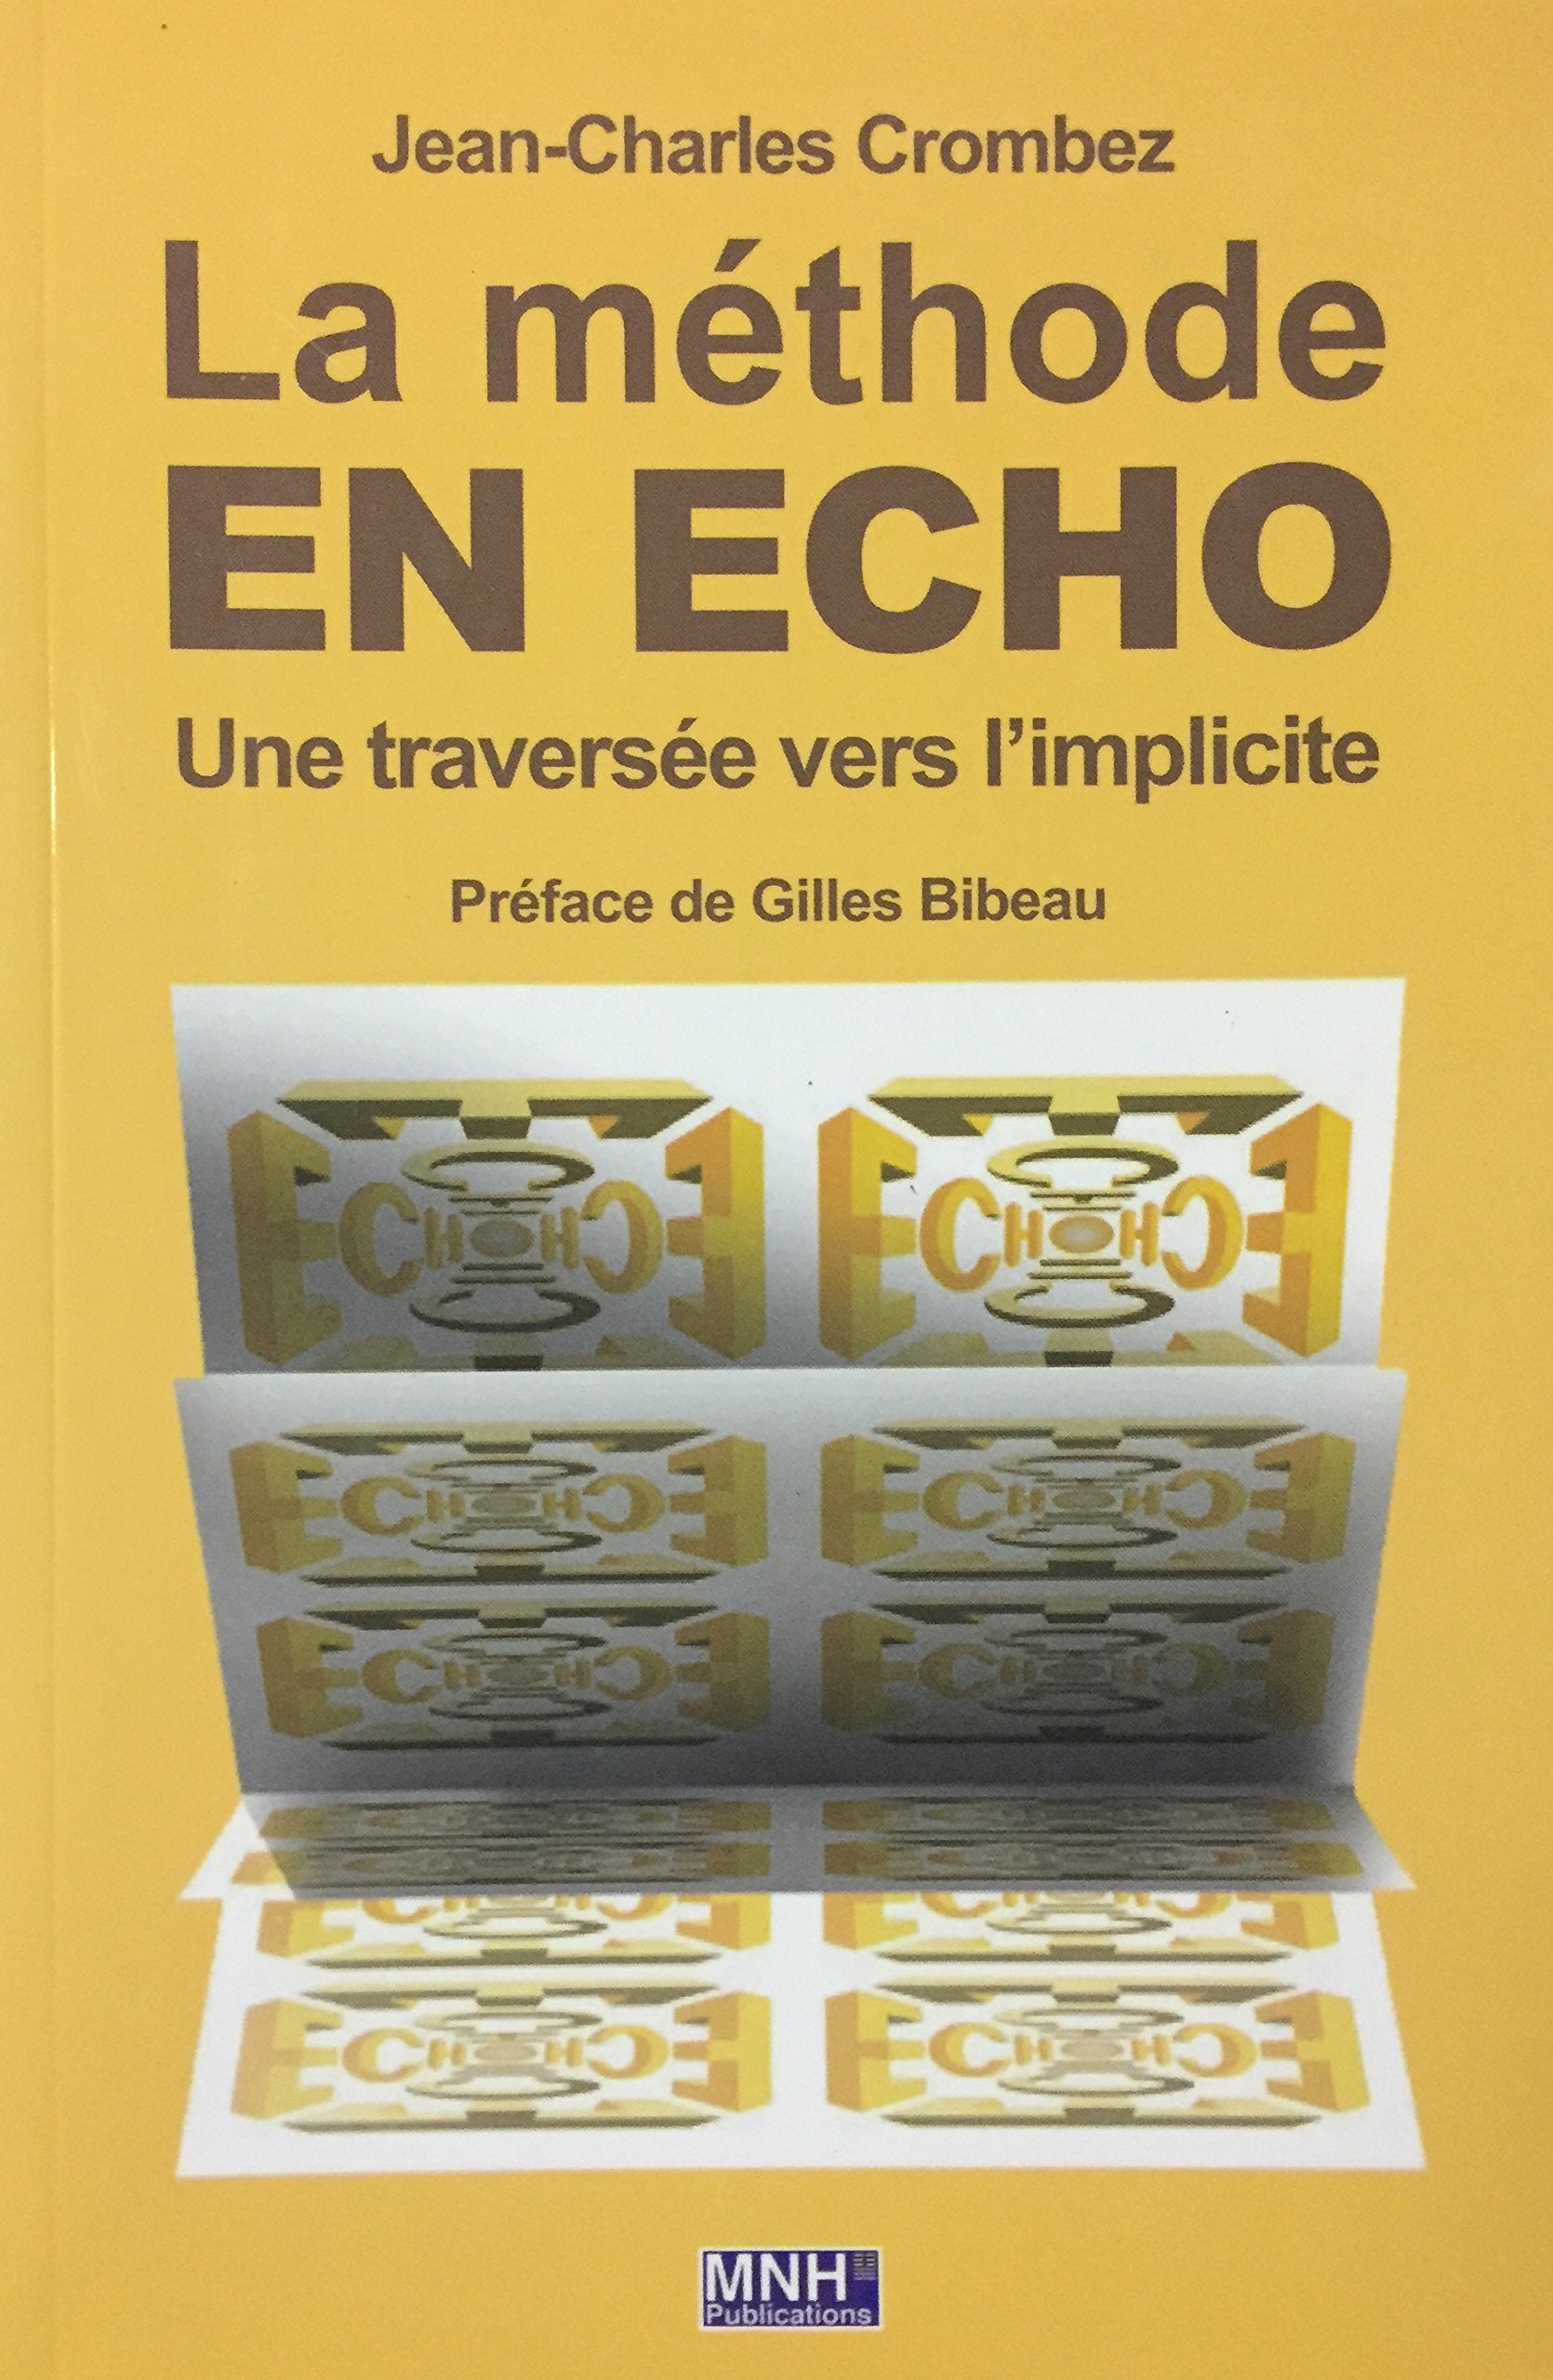 Livre ISBN 2921912902 La méthode en écho : Une traversée vers l'implicite (Jean-Charles Crombez)